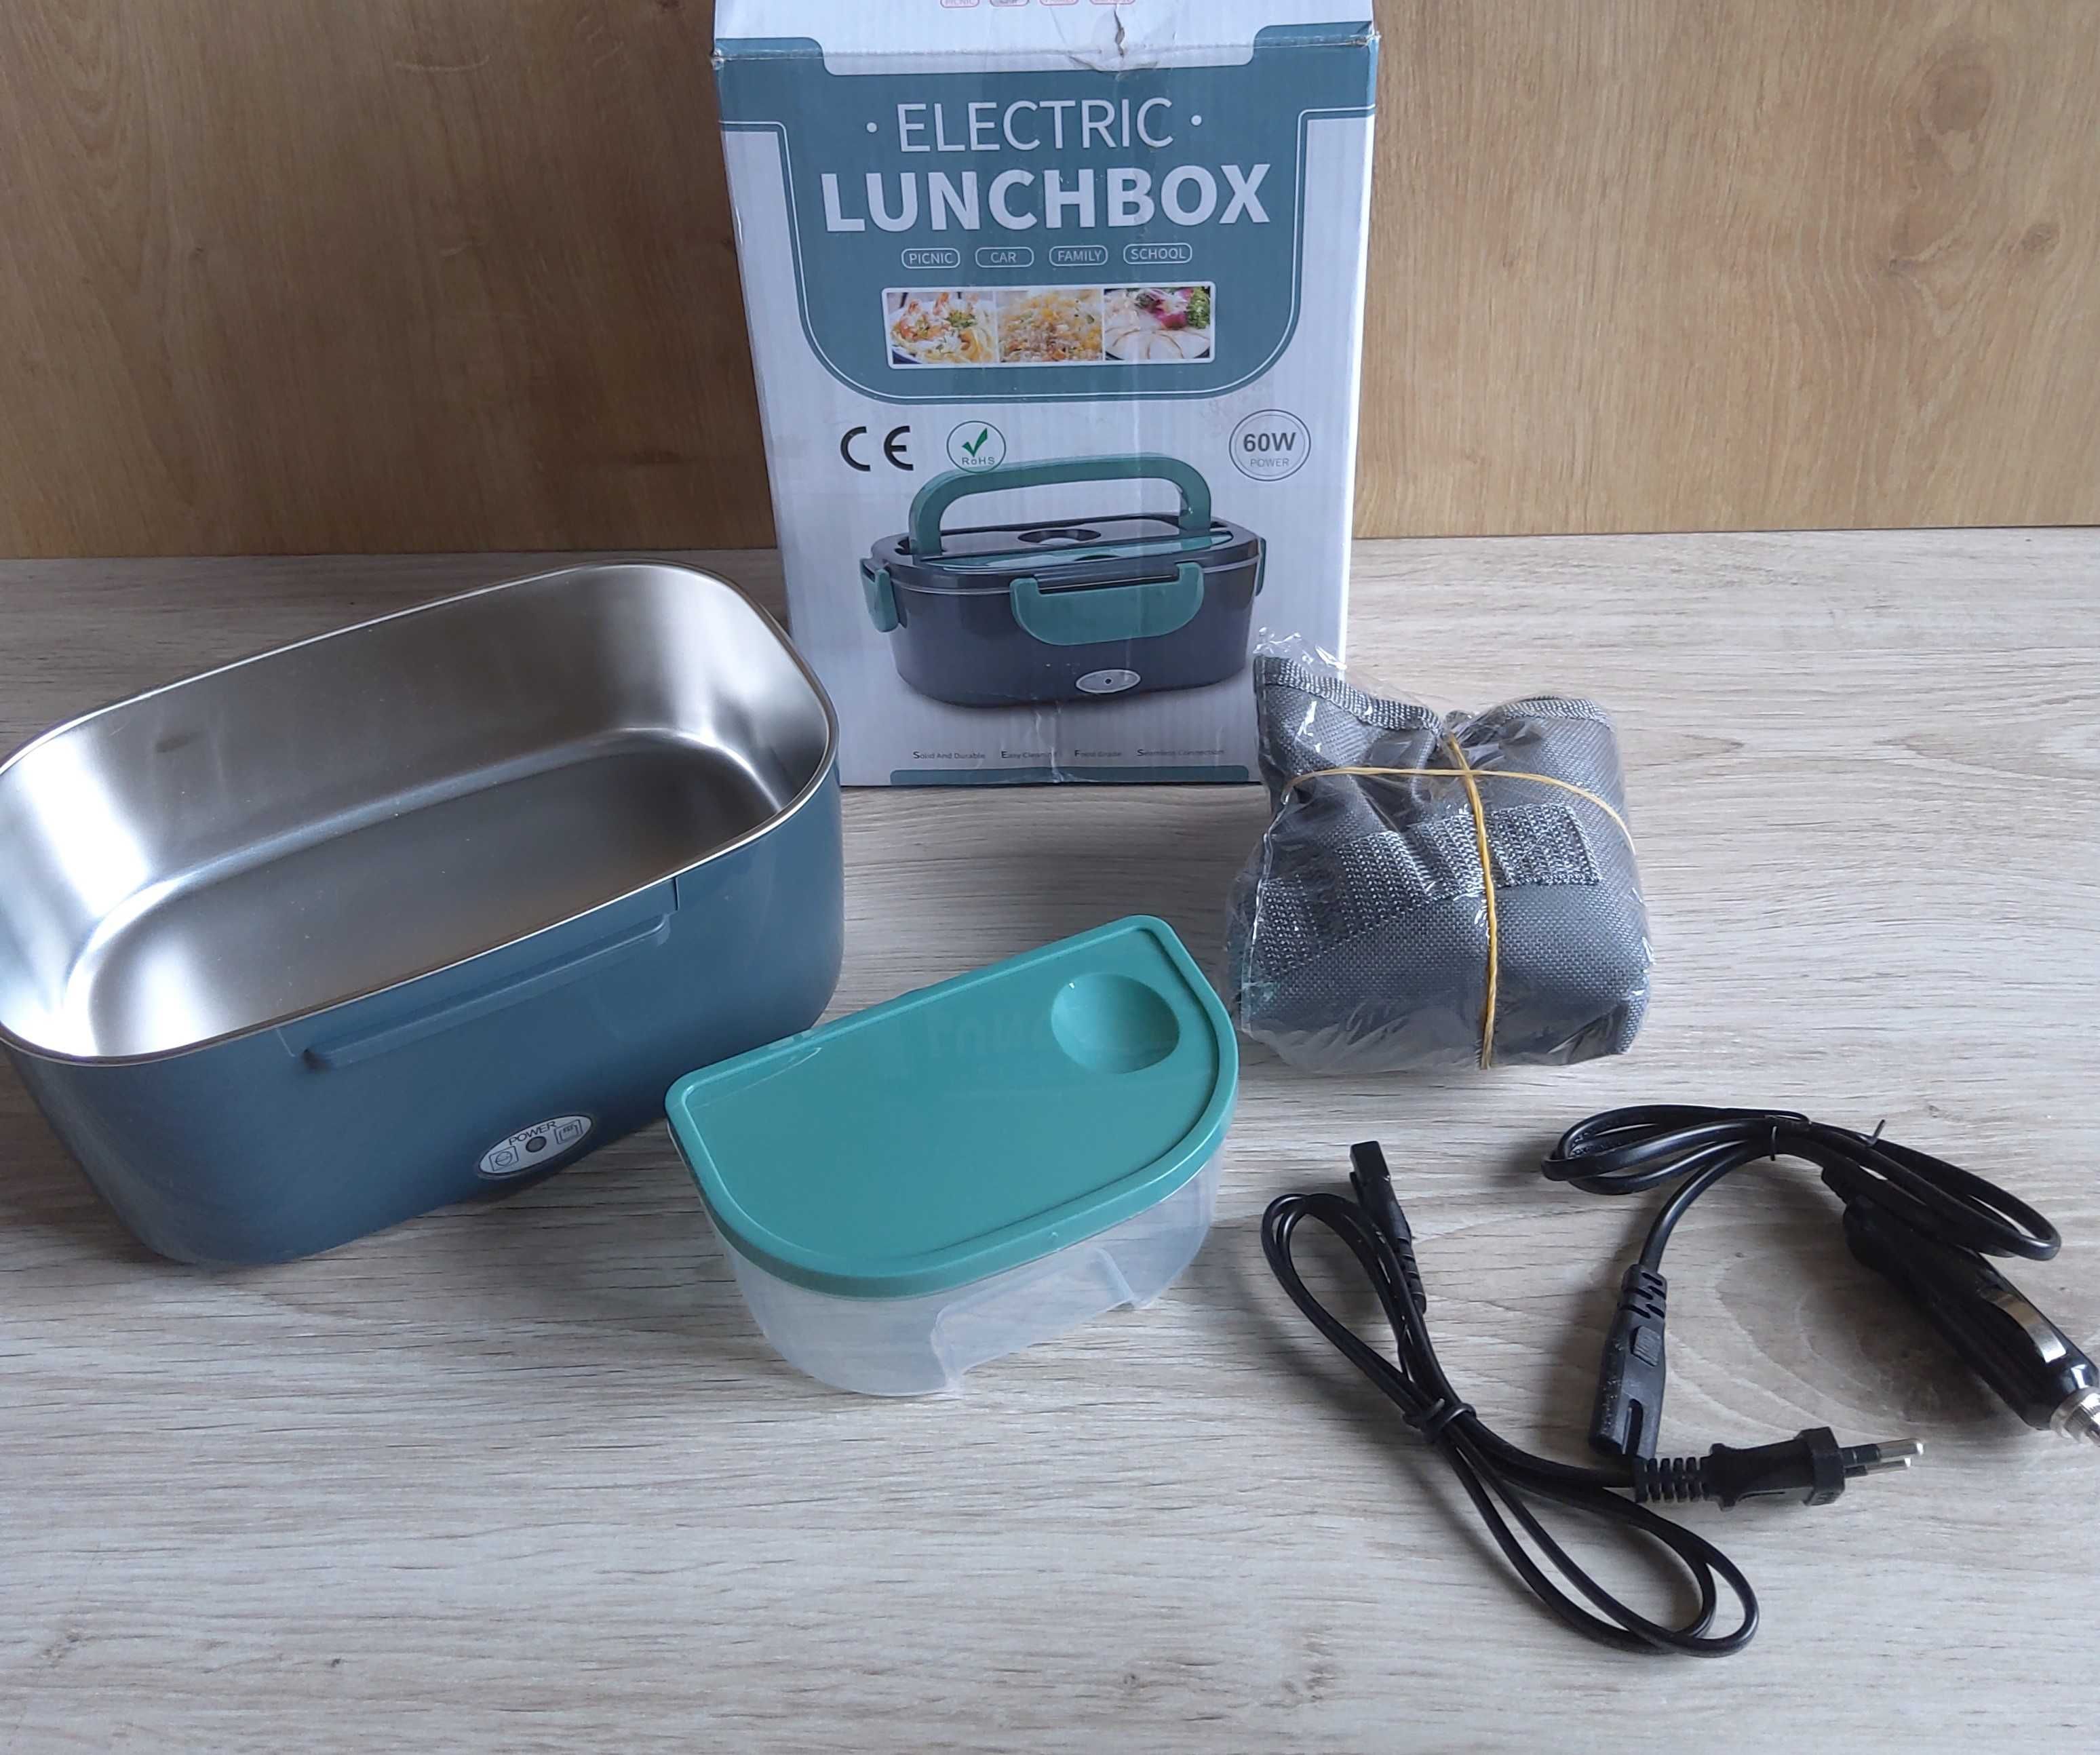 Elektryczny lunchbox pojemnik na jedzenie 60W lunch box czytaj opis